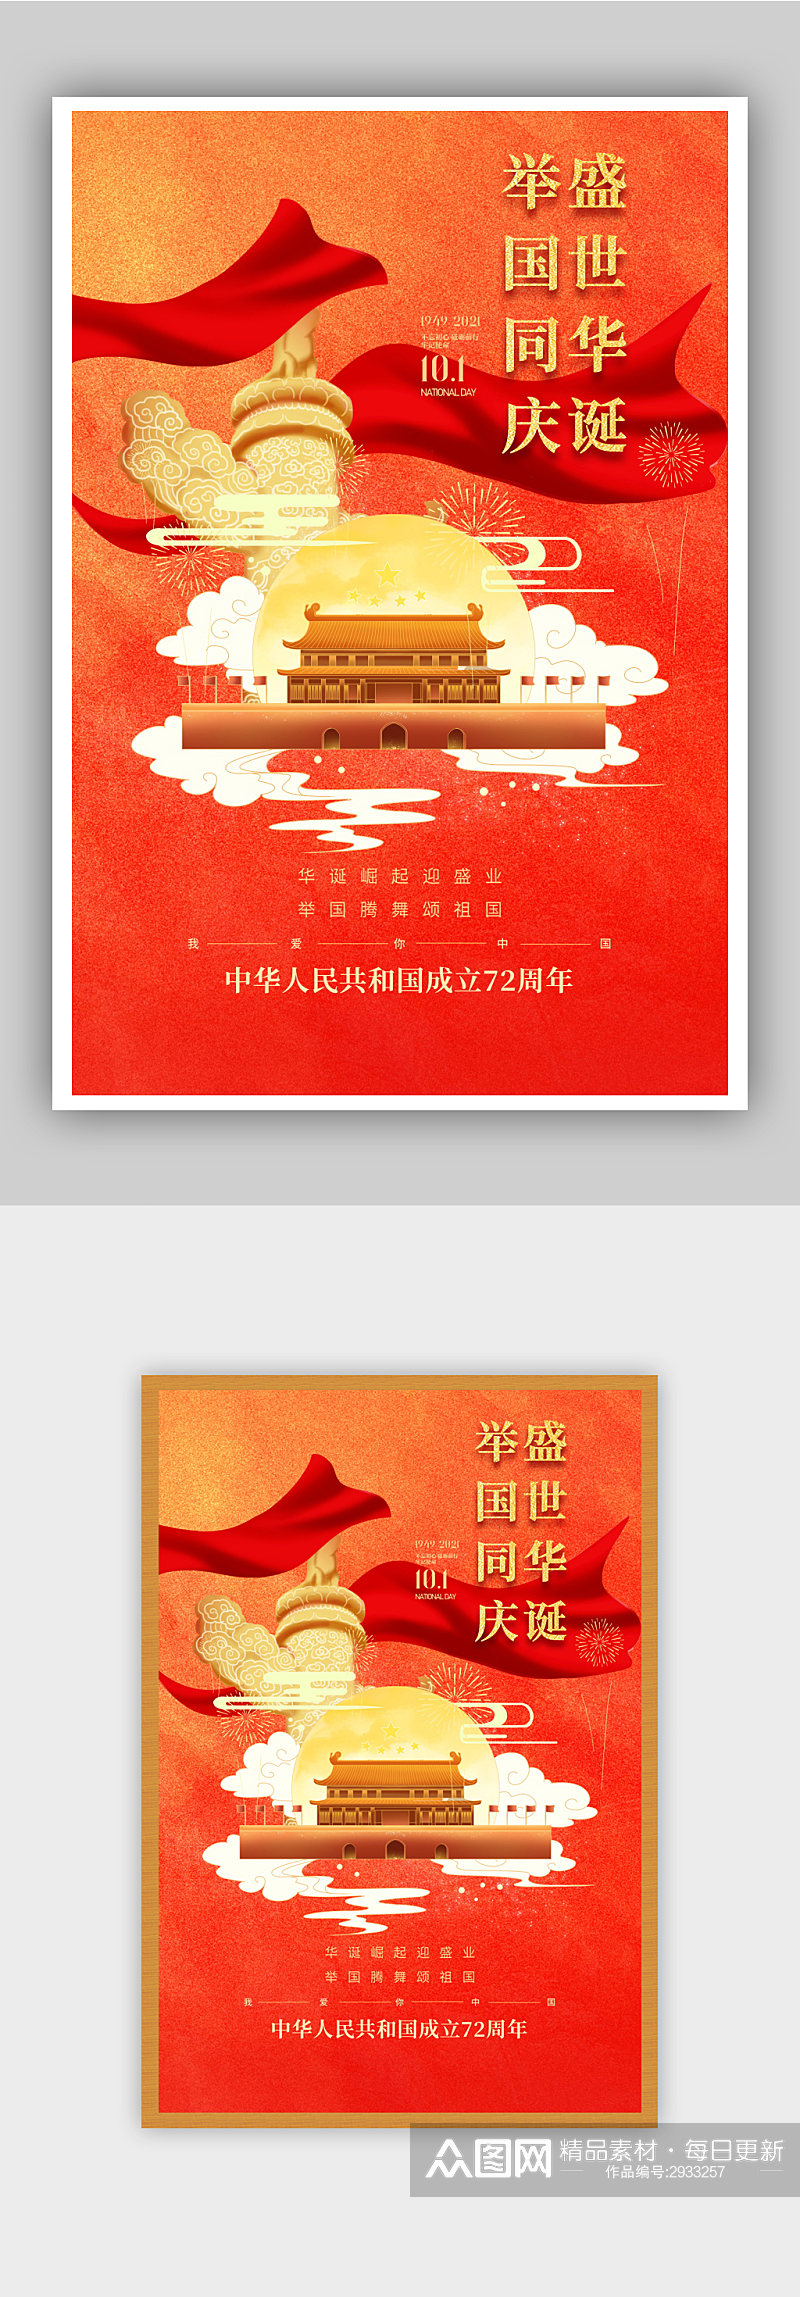 国庆节建国72周年主题海报素材